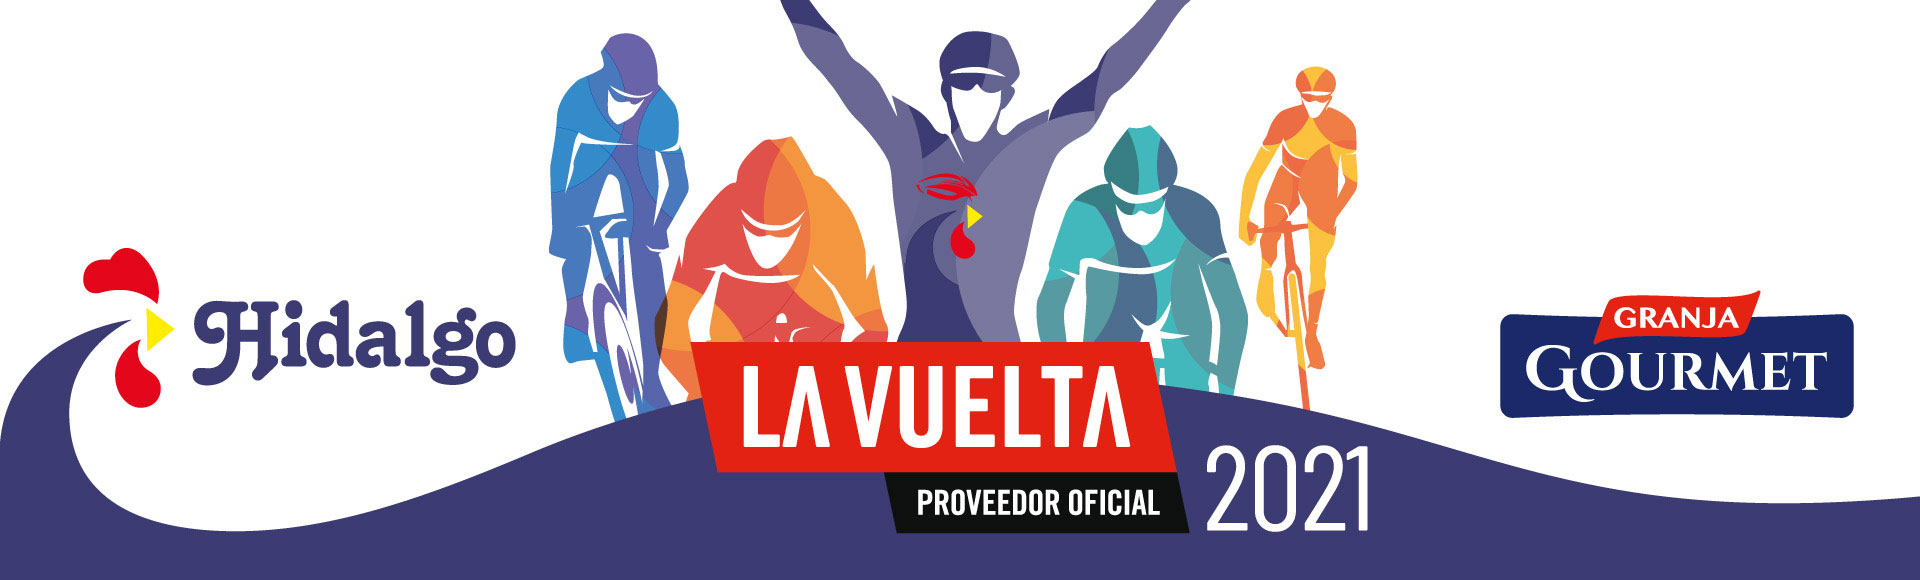 Grupo Hidalgo - Patrocinador Vuelta a España 2021